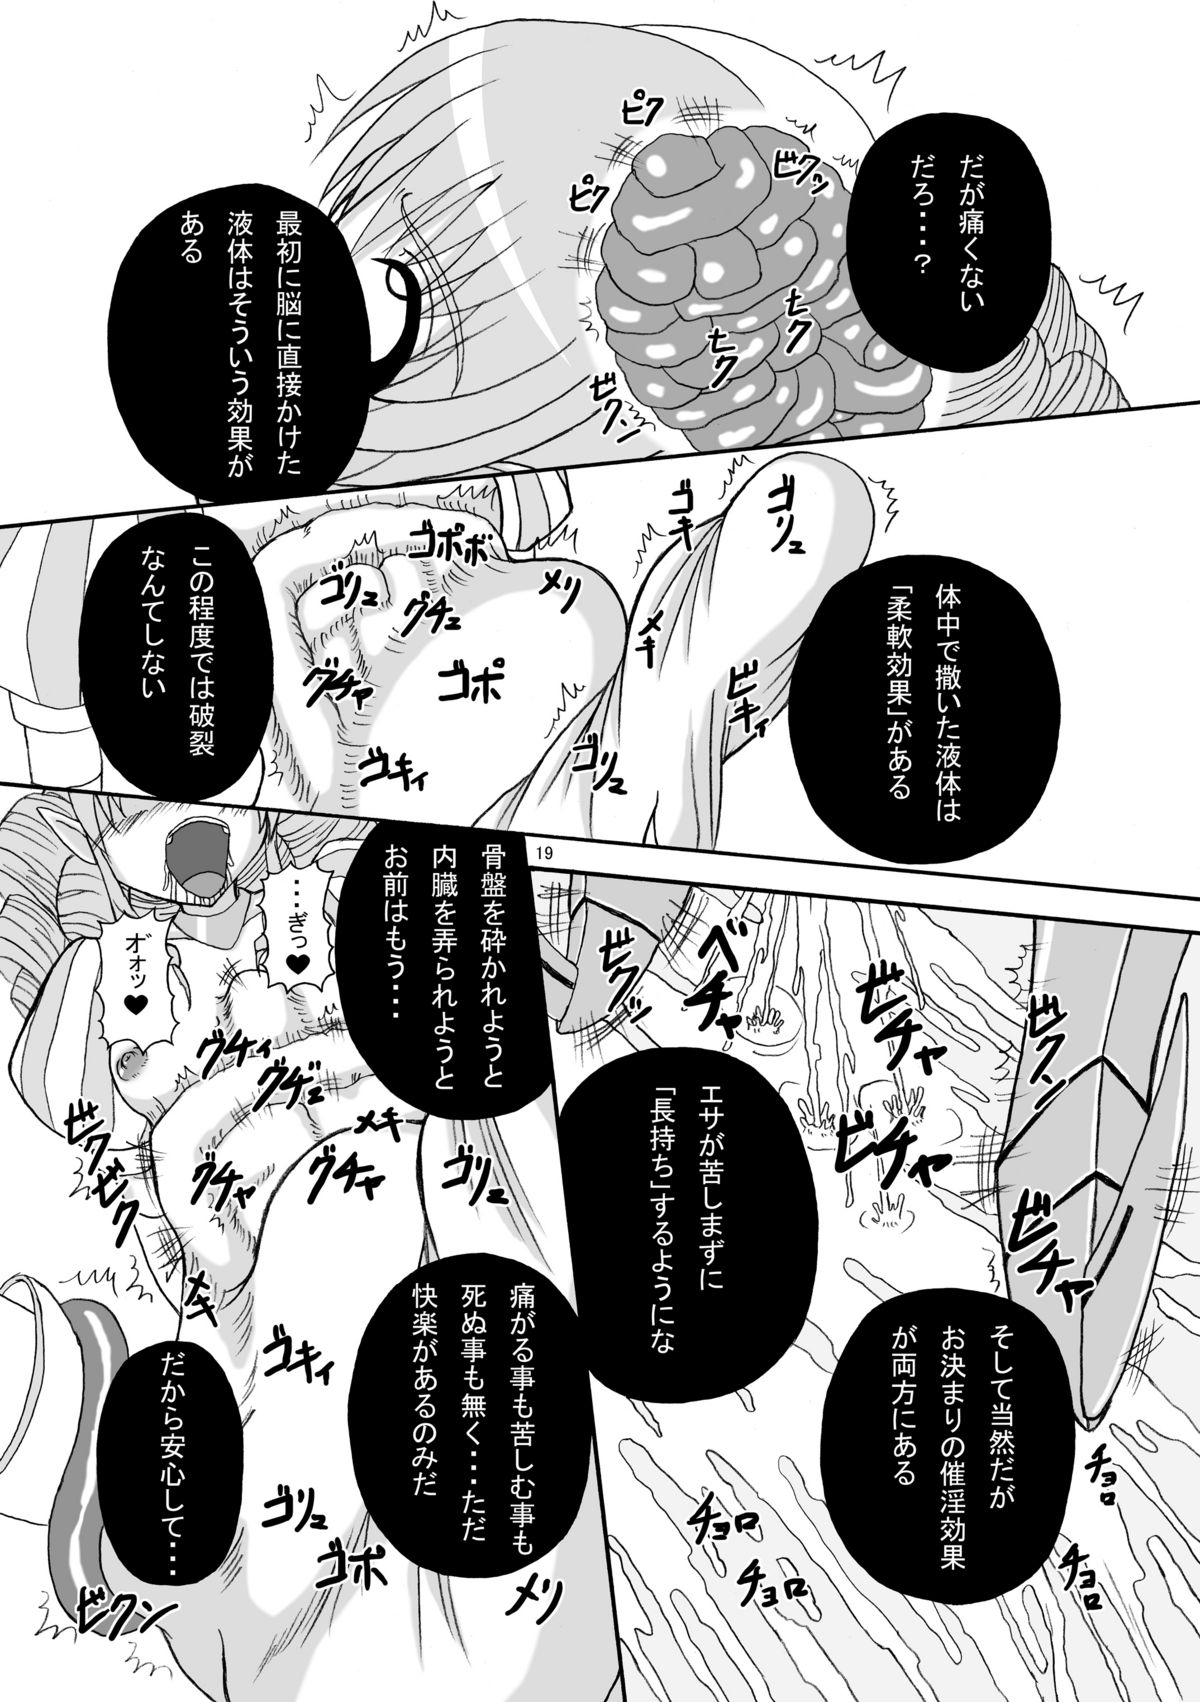 [Pint Size (Tenrai)] Hard Core Blade Ma Sawa Zenshin Kan (Queen's Blade) page 18 full